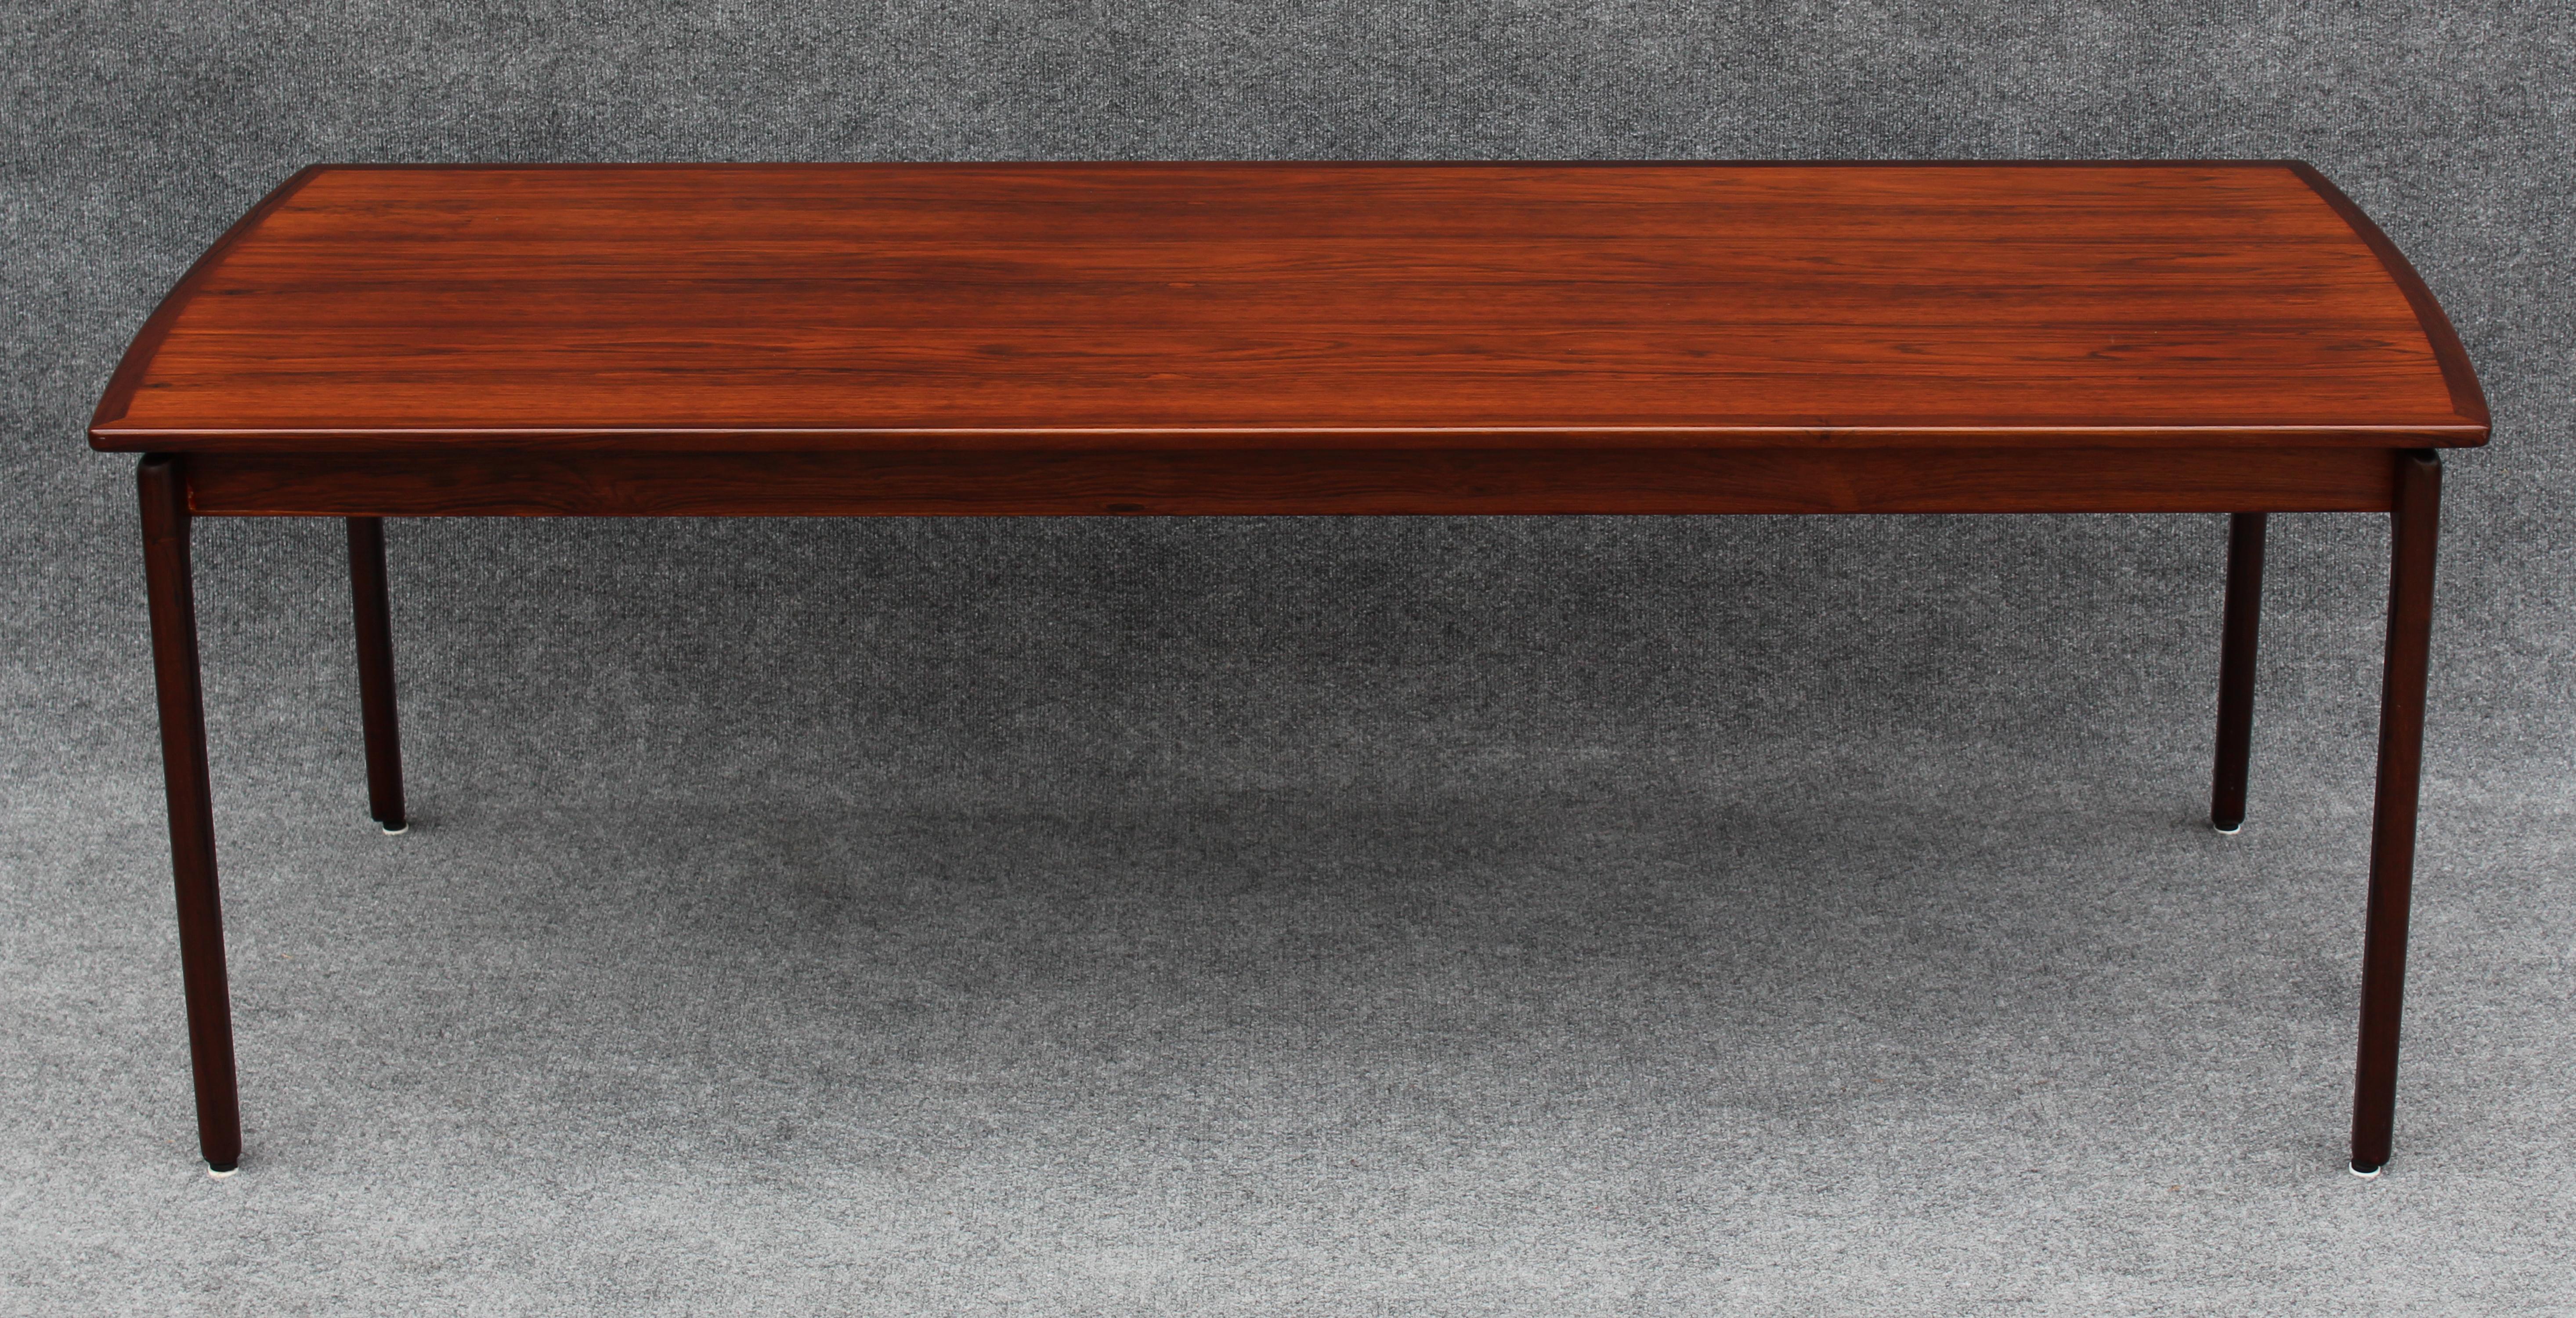 Conçue dans les années 1960 par l'emblématique designer Ole Wanscher, cette table basse haute a été produite par Poul Jeppesens Mobelfabrik. Cet exemplaire n'est pas seulement la rare variante en bois de rose, mais aussi l'un des rares à avoir été